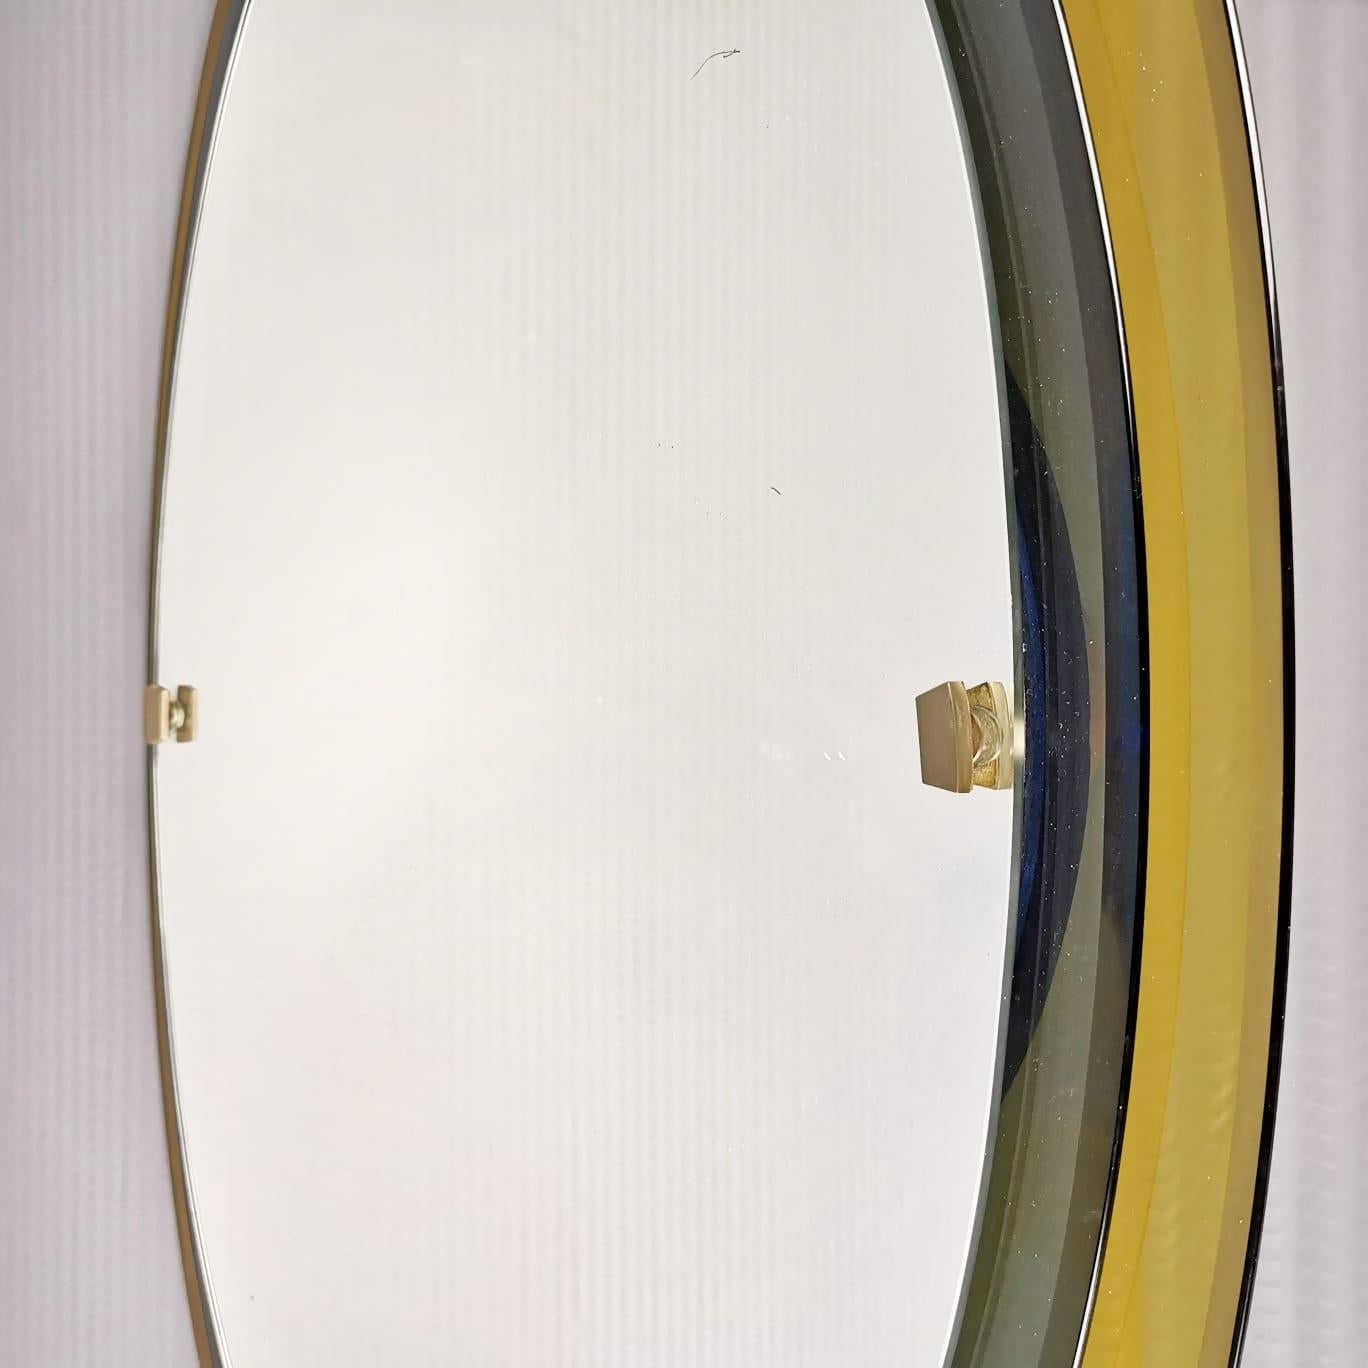 Raro specchio disegnato da Max Ingrand per Fontana Arte nel periodo tra il 1950 e il 1959 si compone di uno strato psecchiato e altri 2 strati di vetro di murano colorato uno giallo e uno blu.
Riporta il marchio Fontanit della vetreria di Lucio